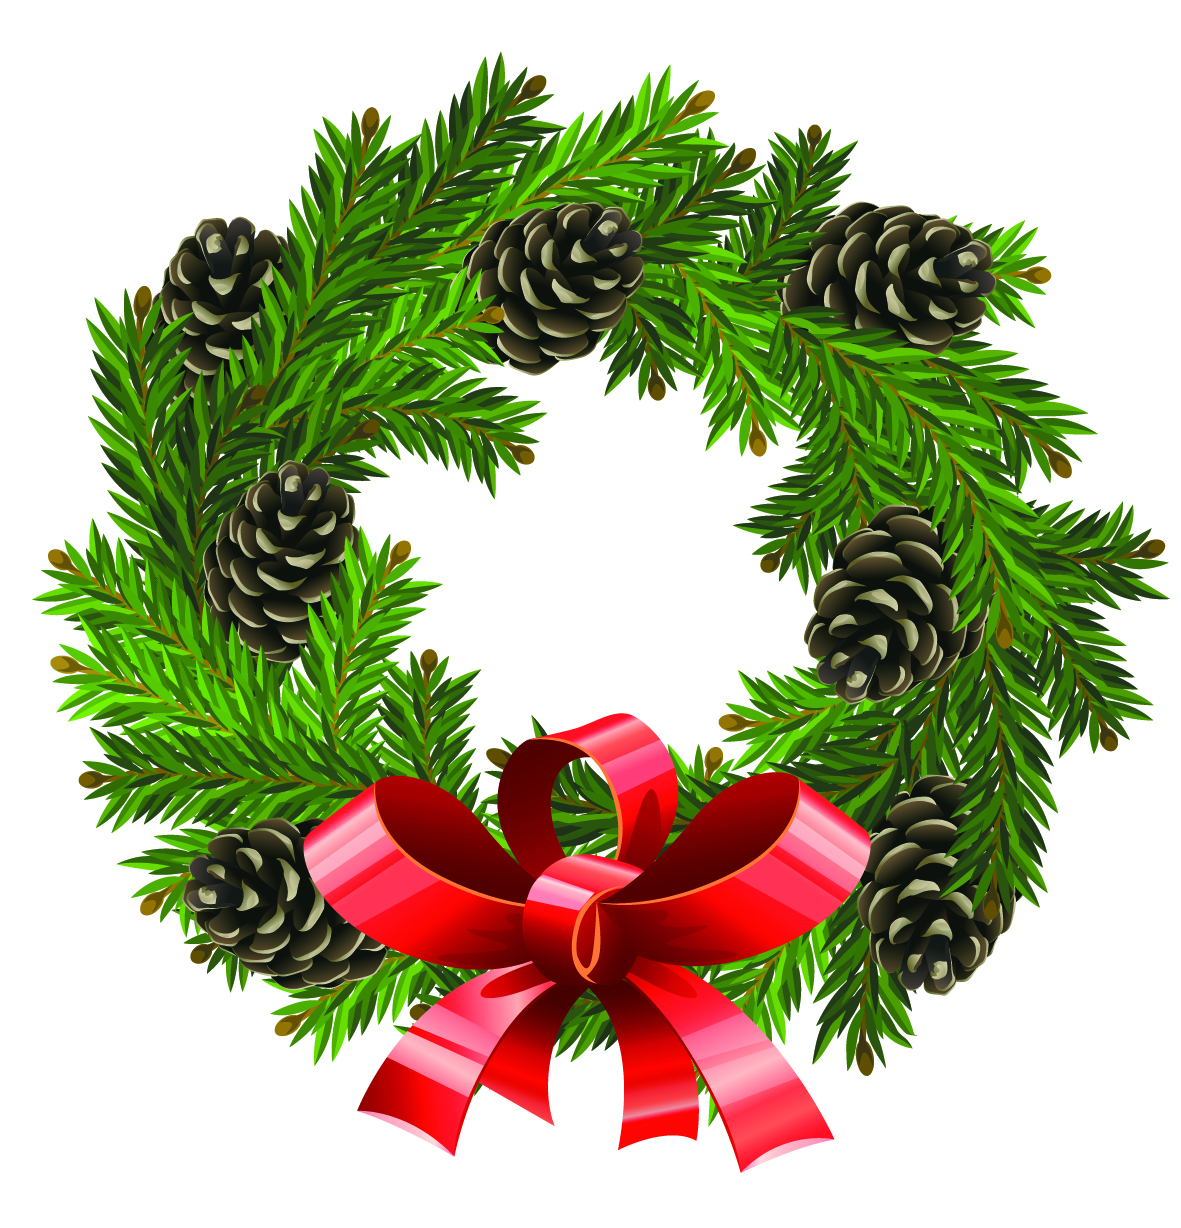 Wreath christmas clipart - ClipartFox